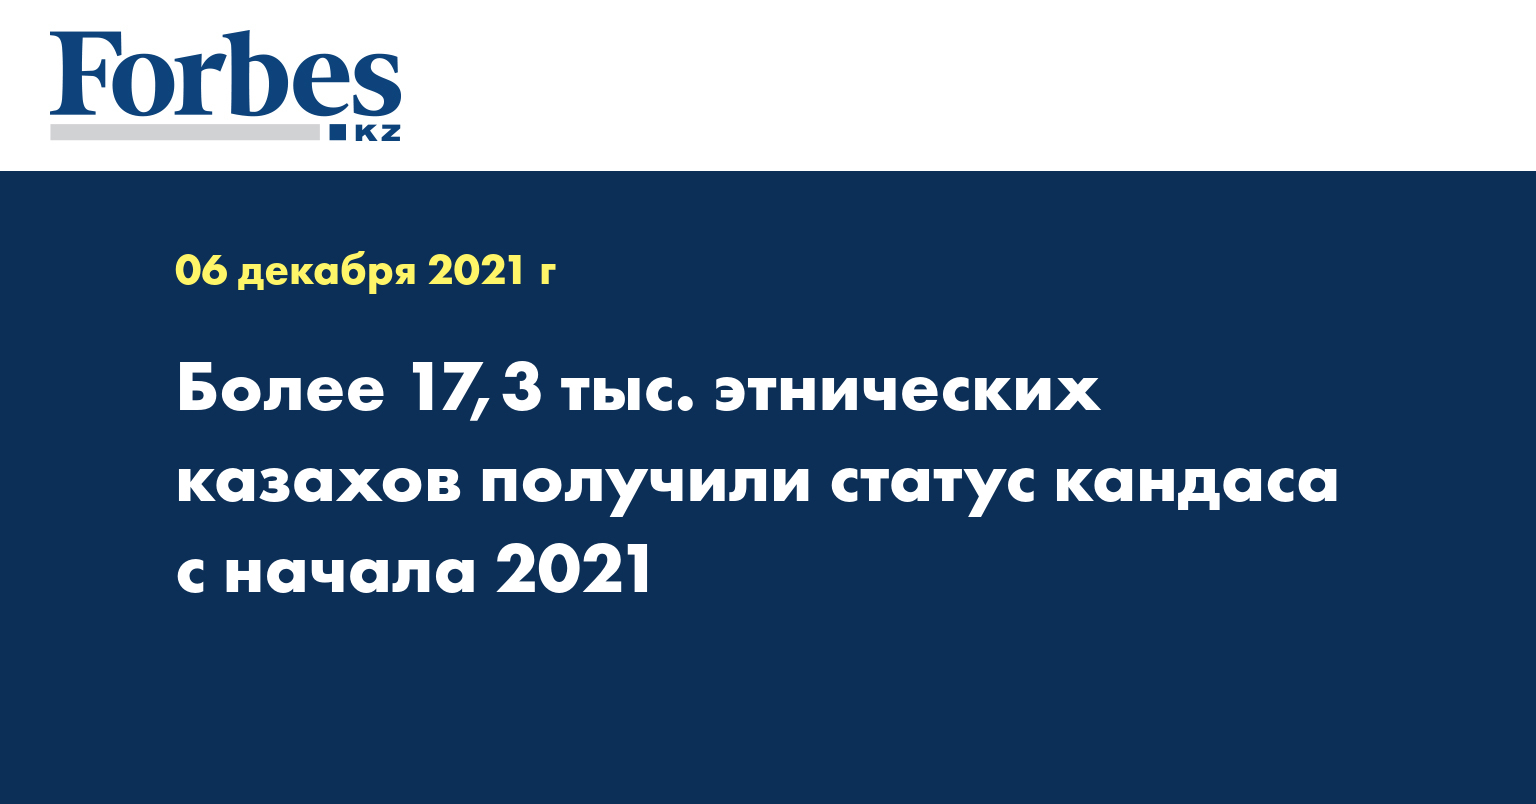 Более 17,3 тыс. этнических казахов получили статус кандаса с начала 2021